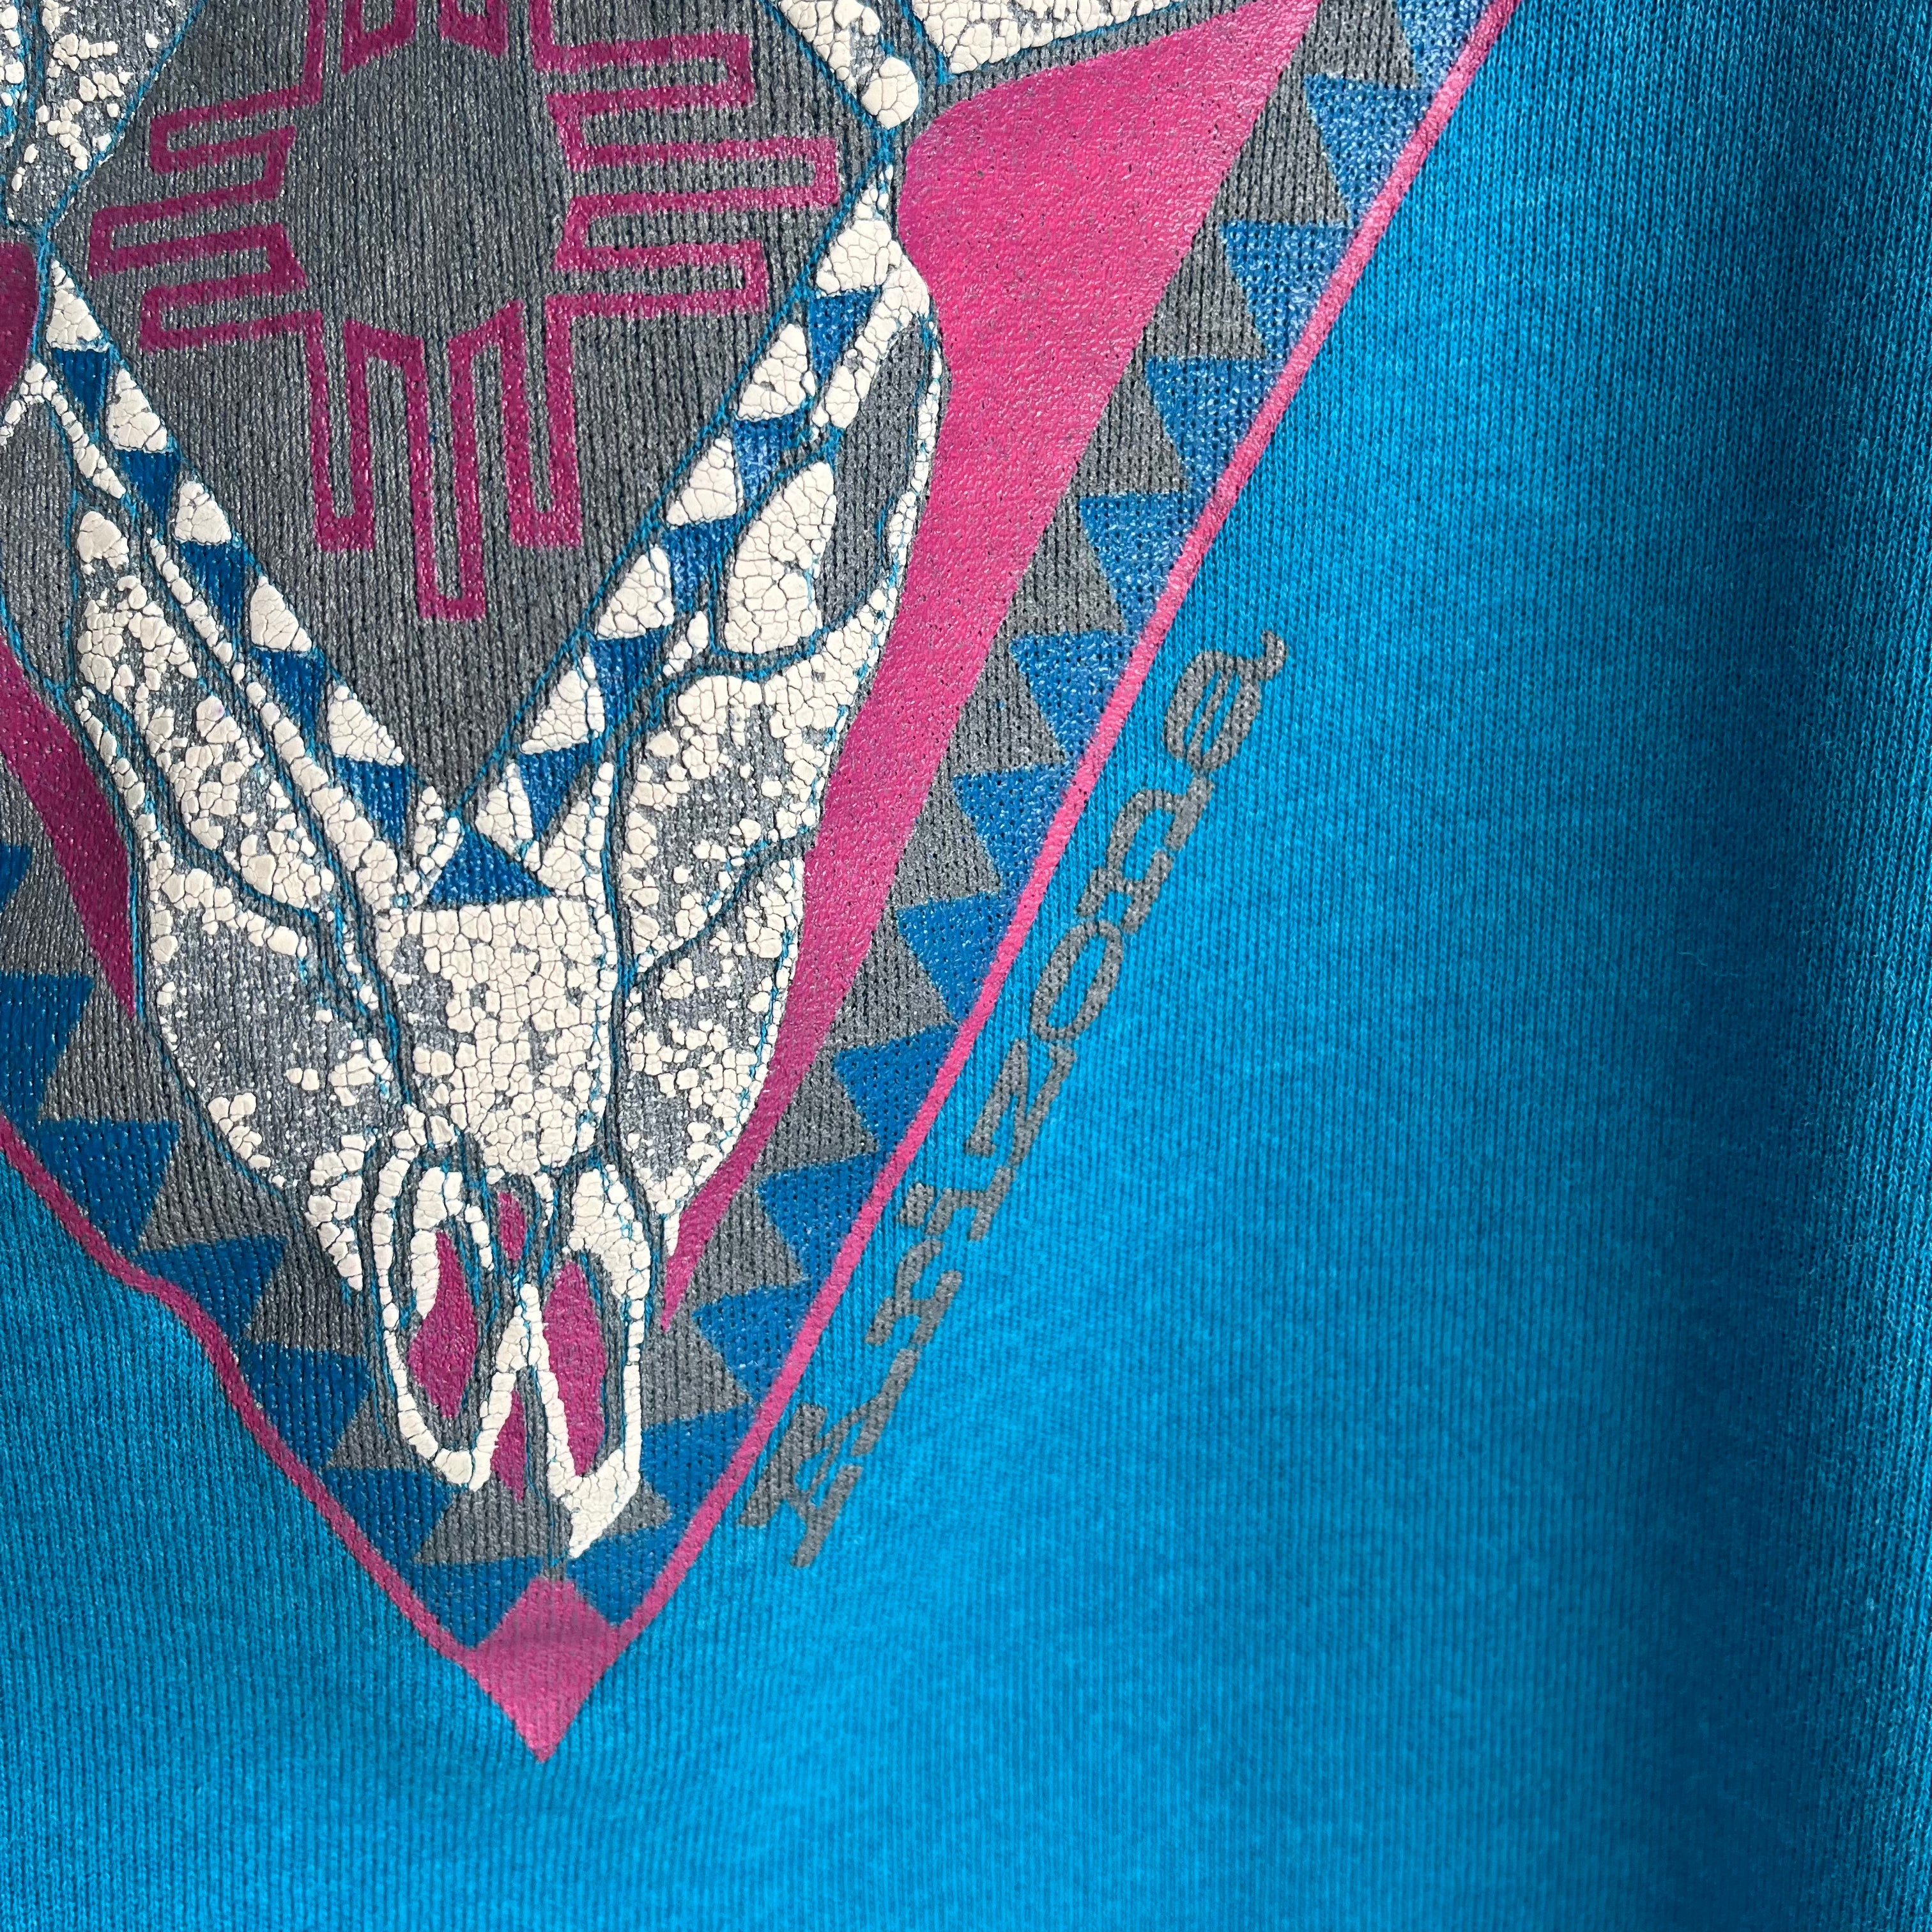 1980s Arizona Tourist Sweatshirt